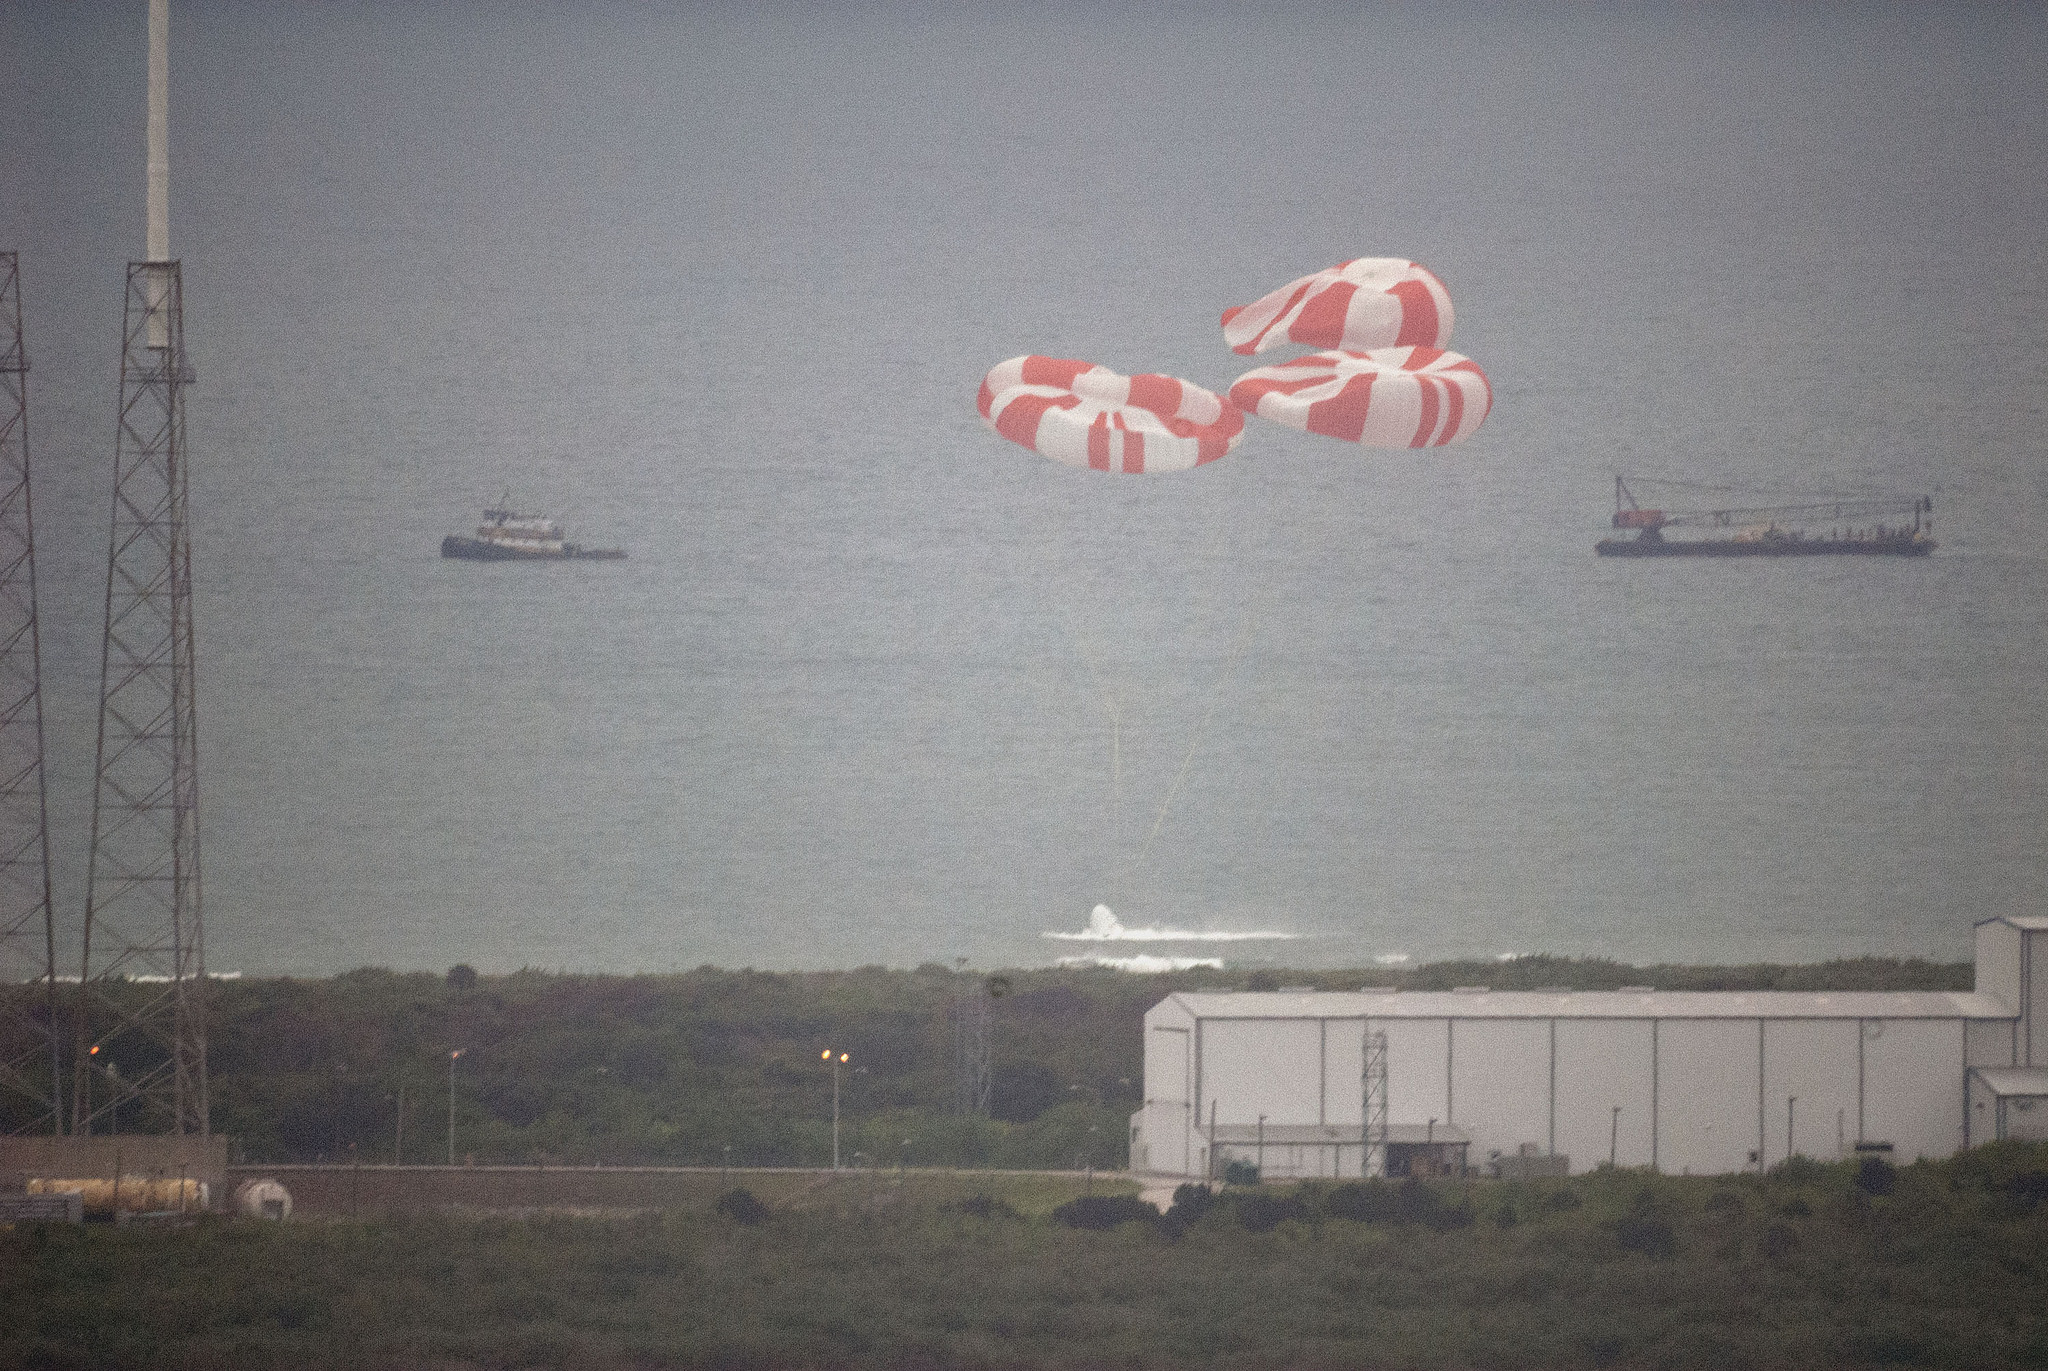 SpaceX Crew Dragon spacecraft launch abort test